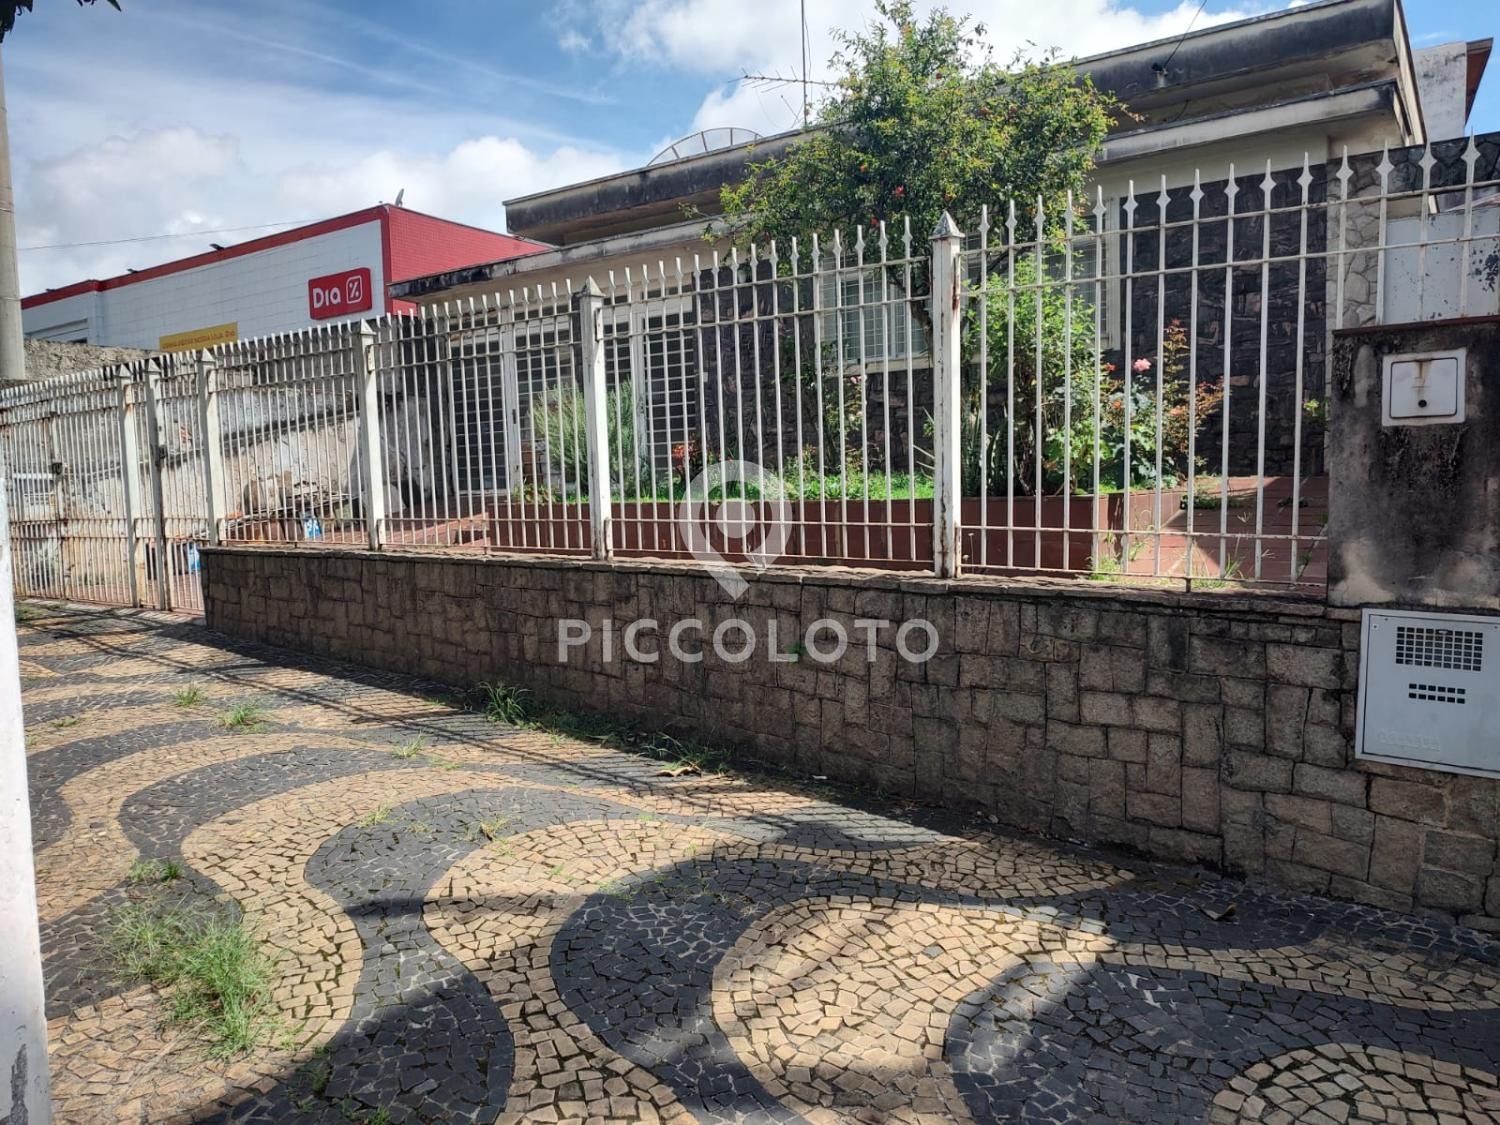 Piccoloto - Casa à venda no Vila João Jorge em Campinas